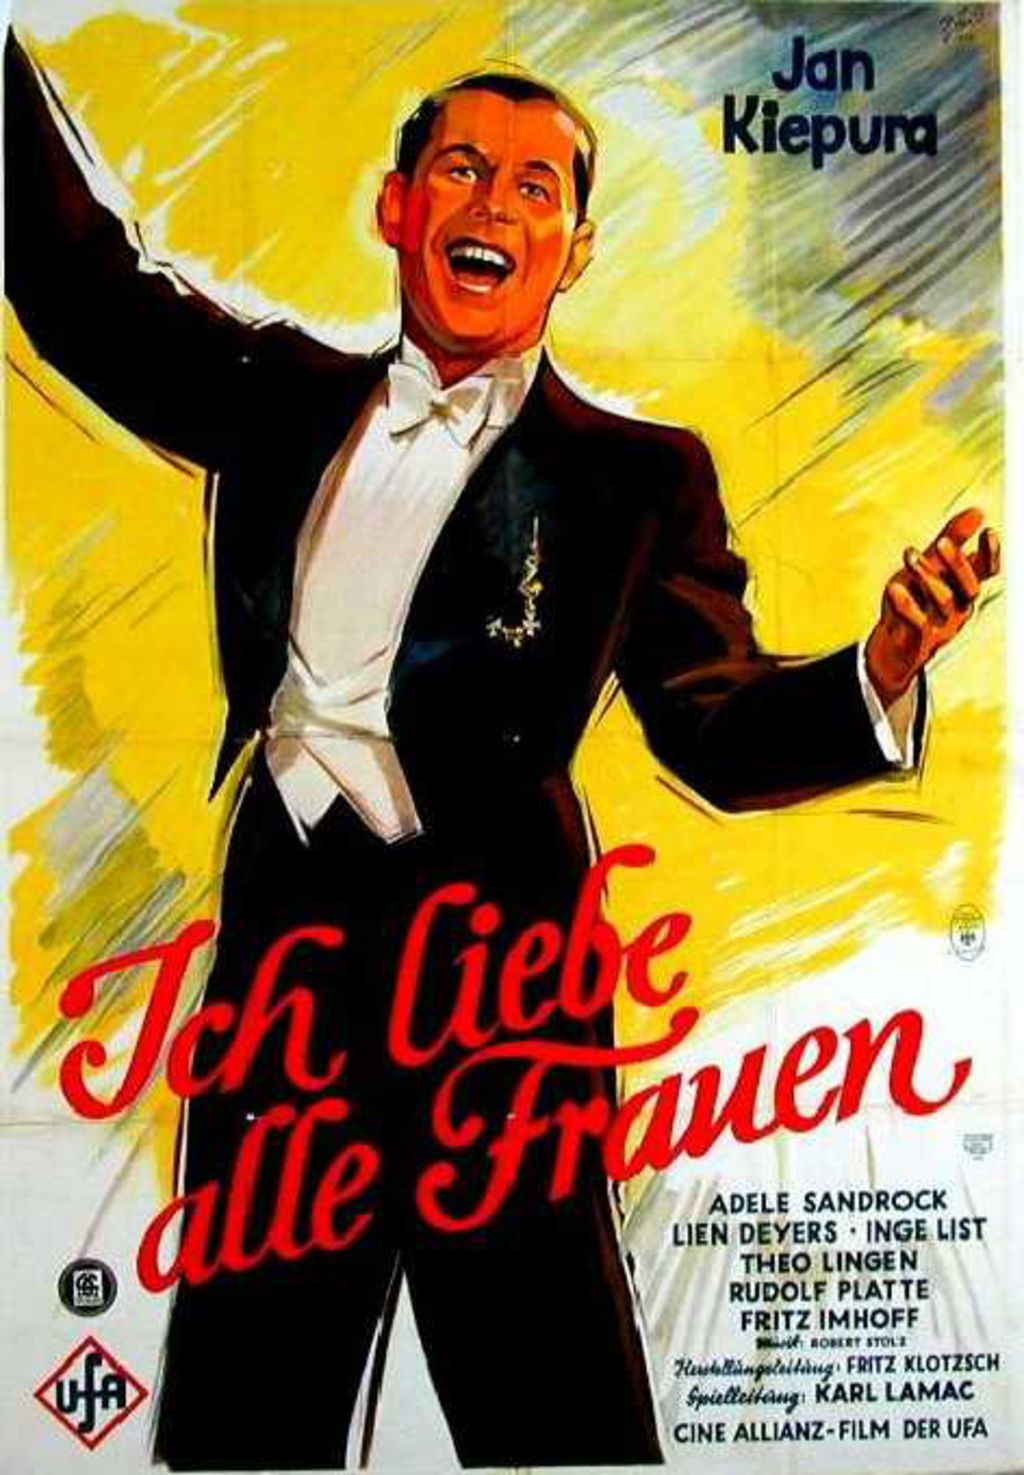 Exponat: Filmplakat: "Ich liebe alle Frauen", um 1935